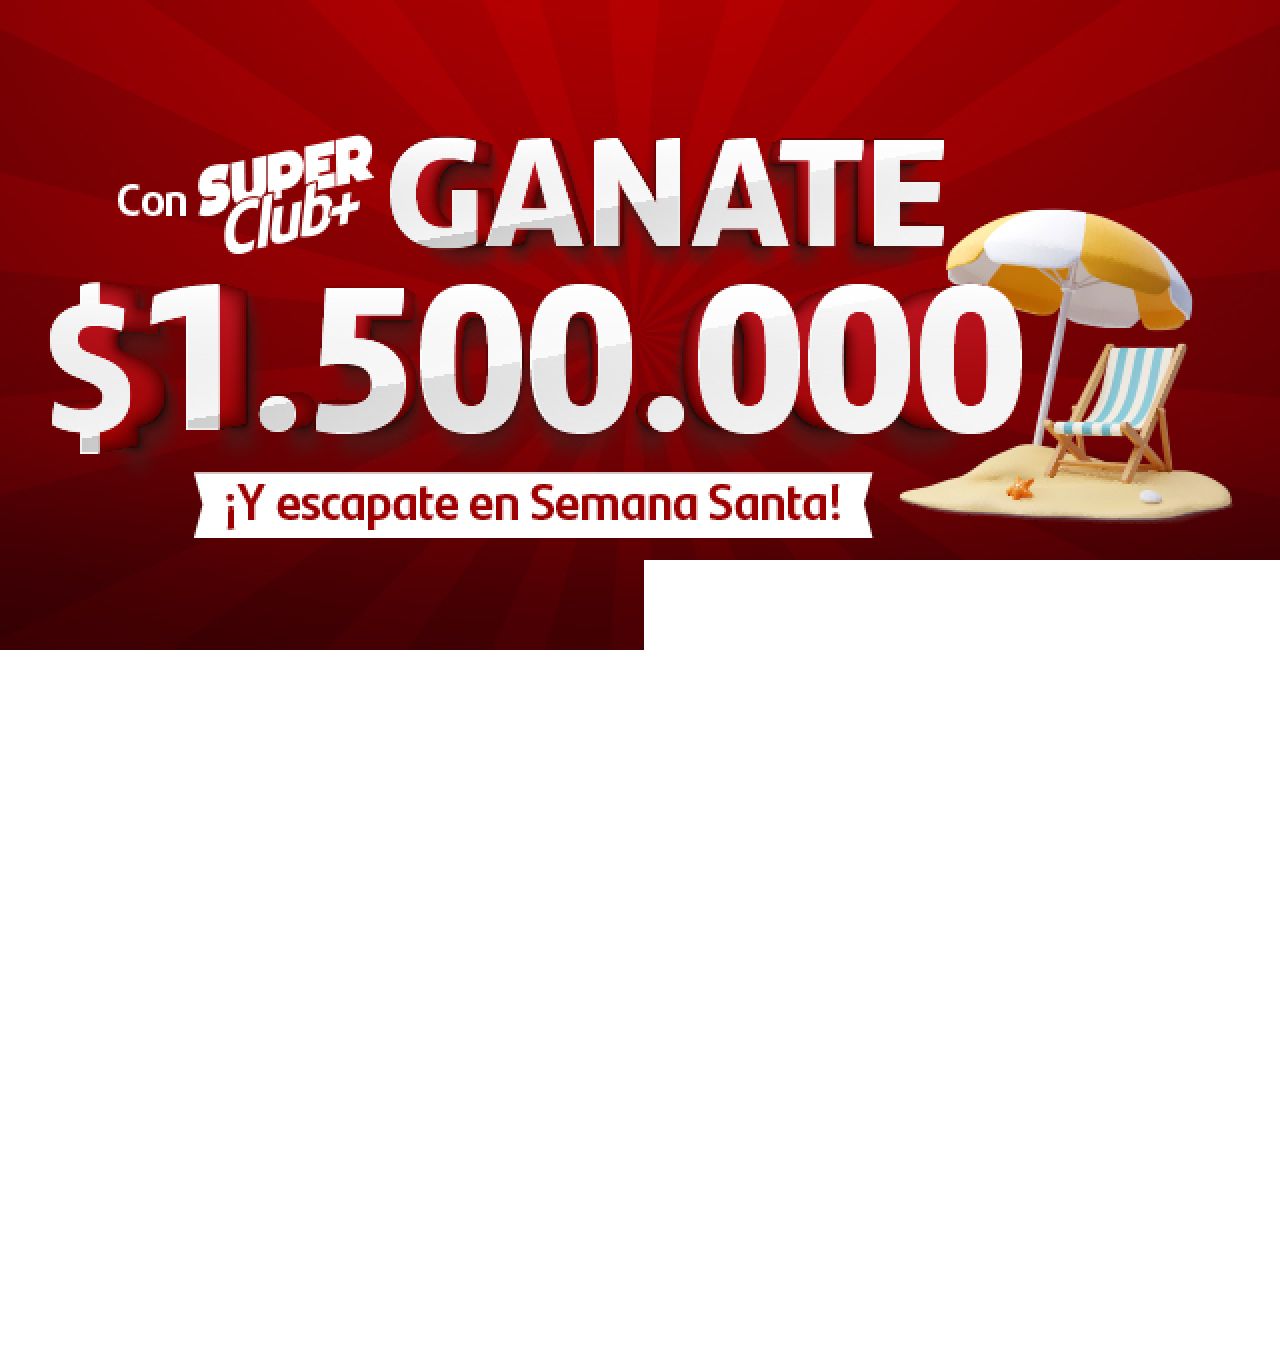 Con Superclub + Ganate $1.500.000 Y escapate en Semana Santa